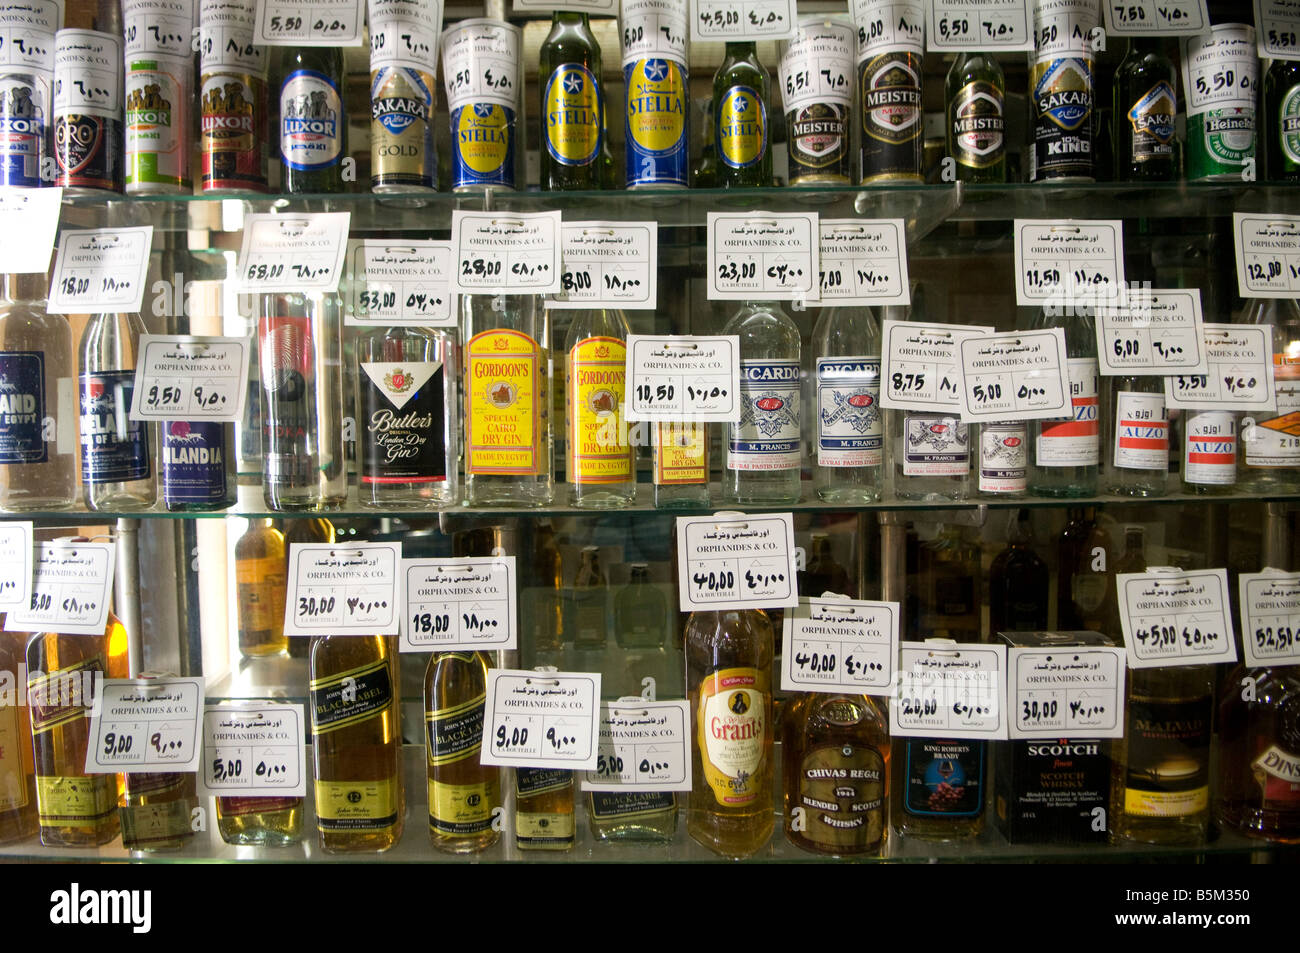 Bouteilles de boisson alcoolisée affichée dans un magasin d'alcool au Caire  Egypte Photo Stock - Alamy